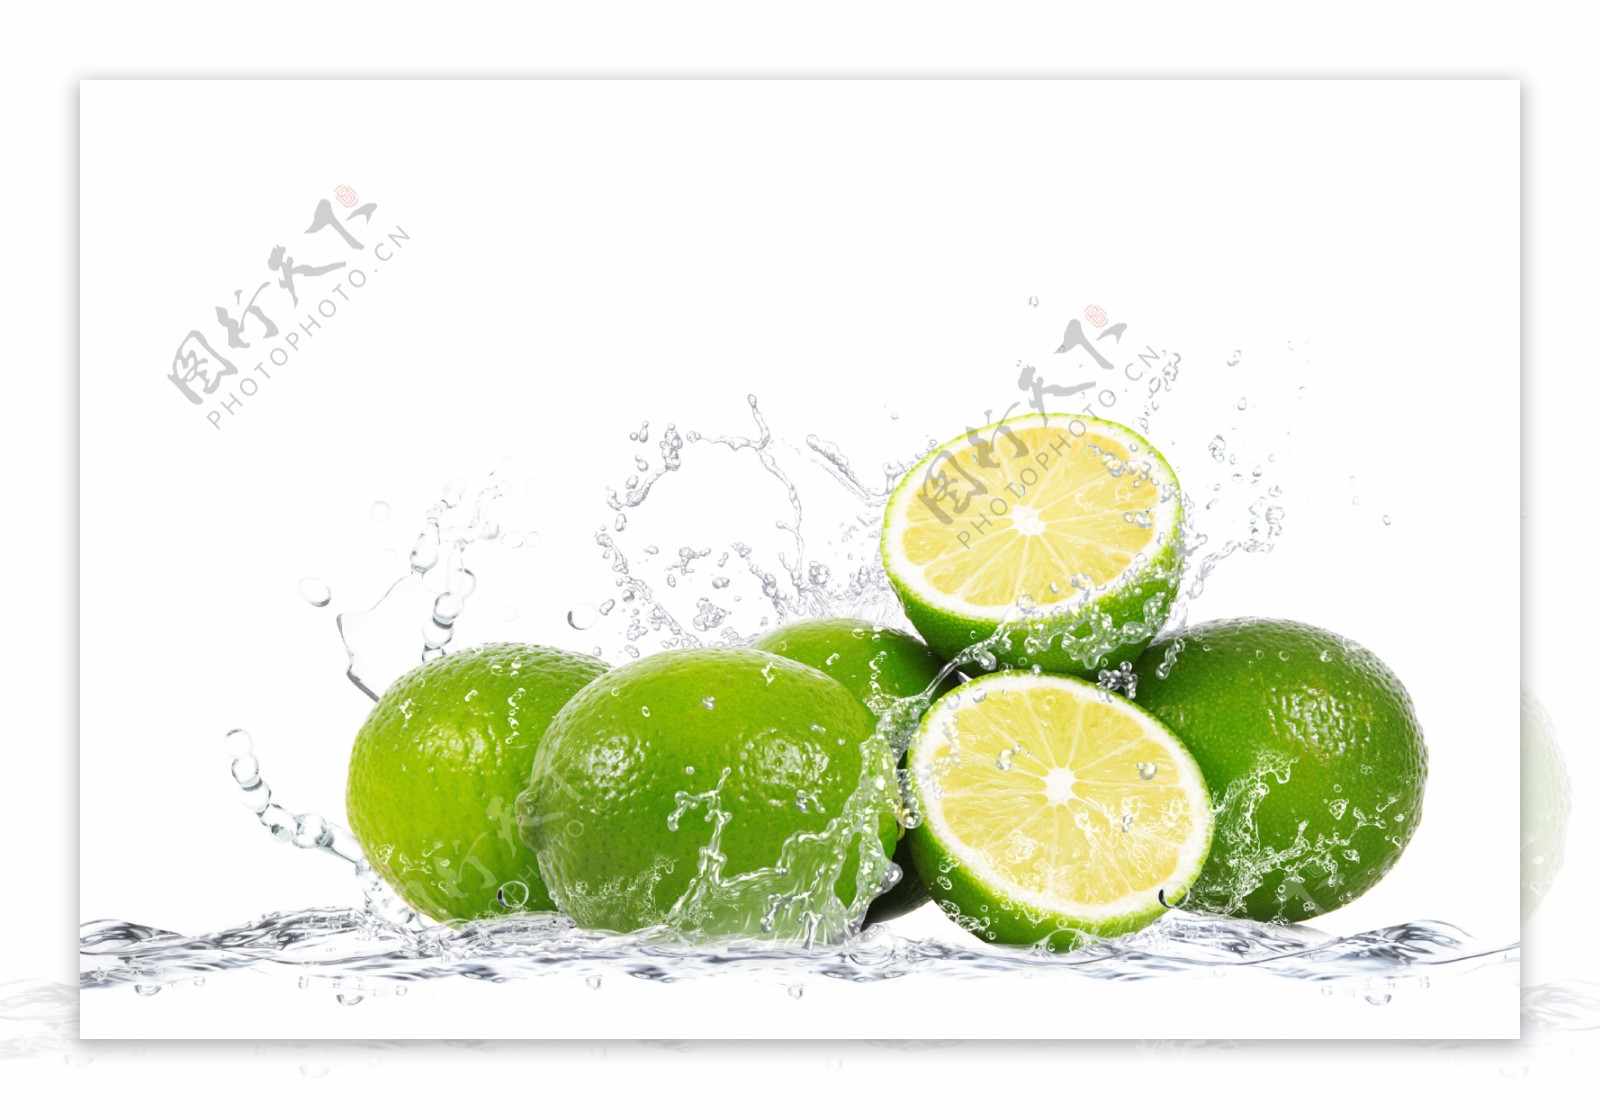 水洗柠檬